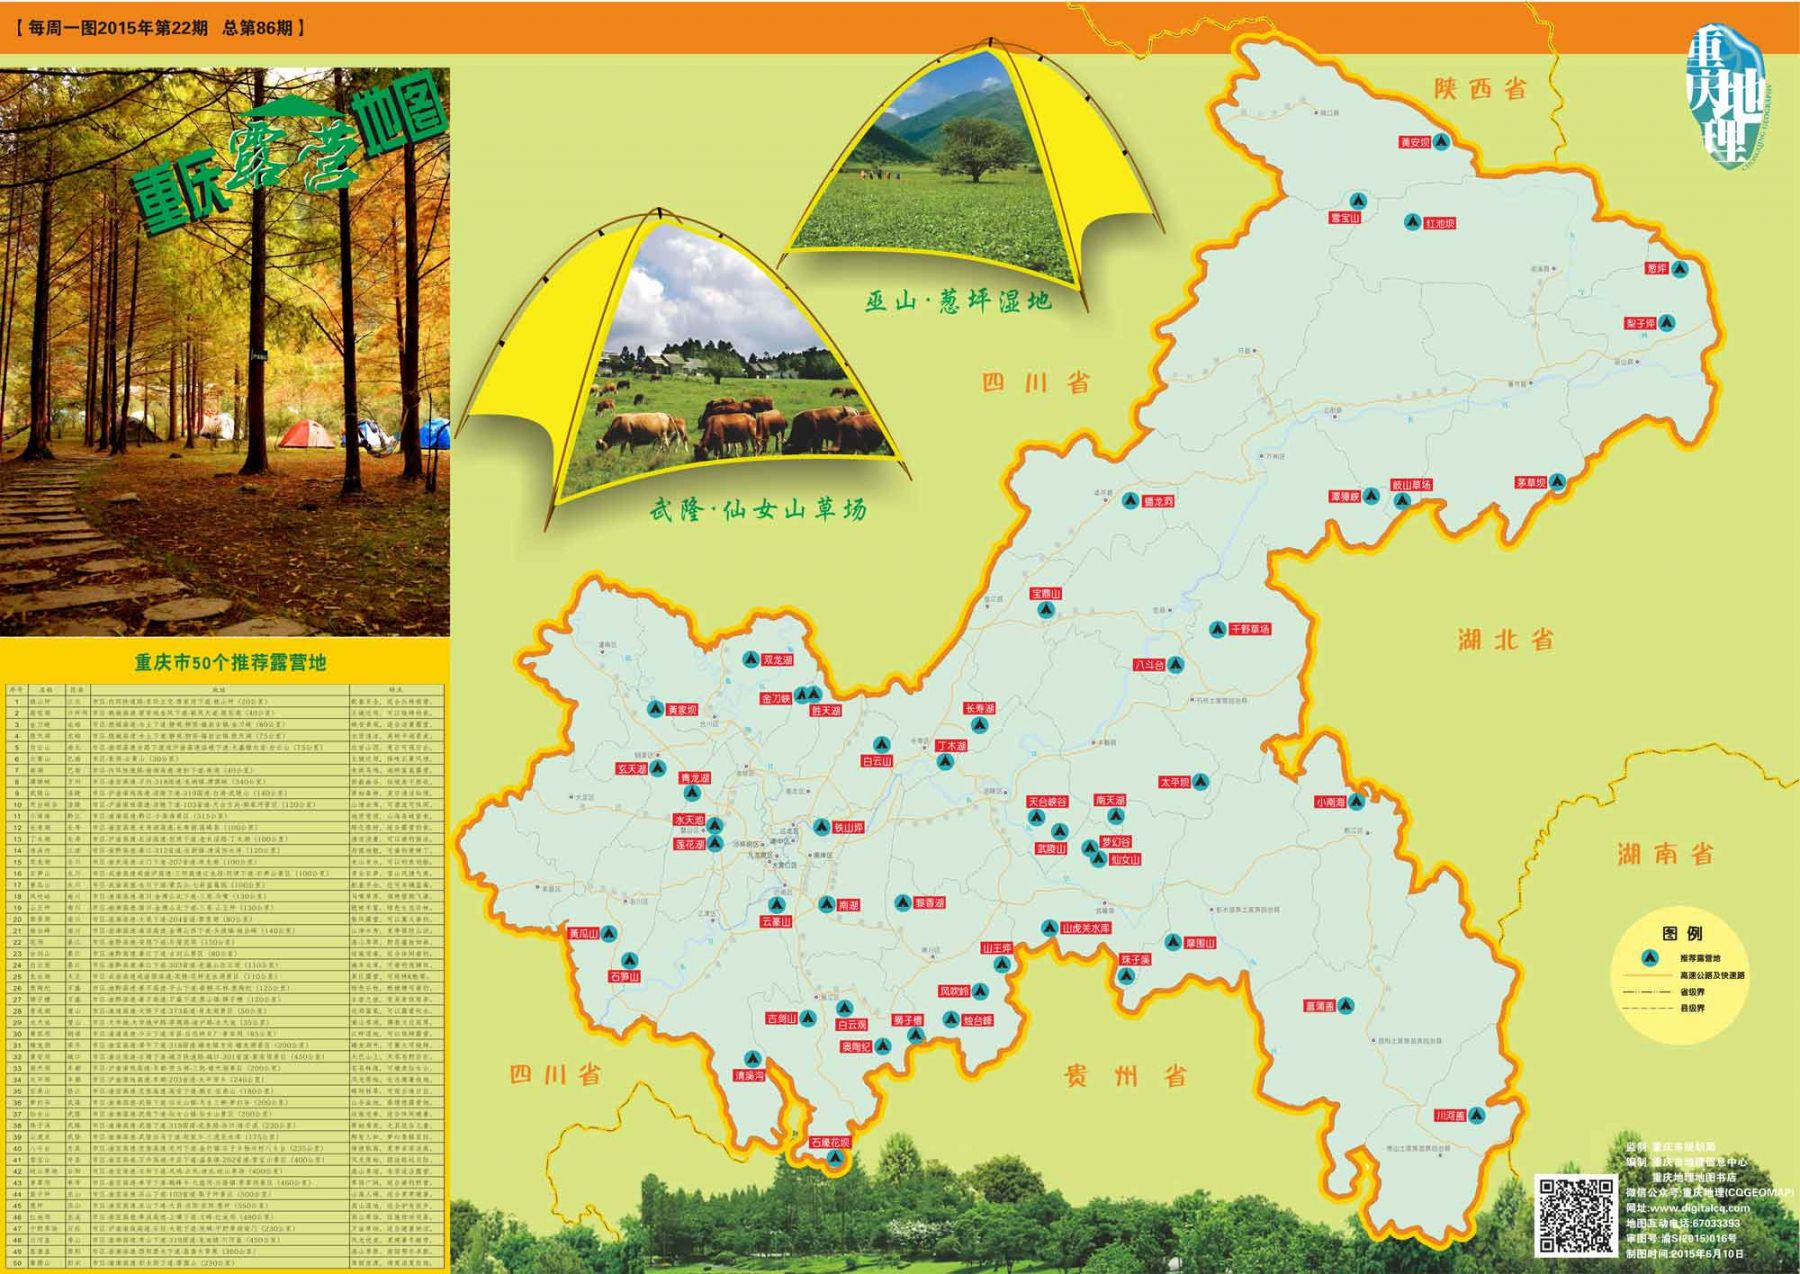 《重庆露营地图》公布 这个夏季露营避暑跟着地图就行图片